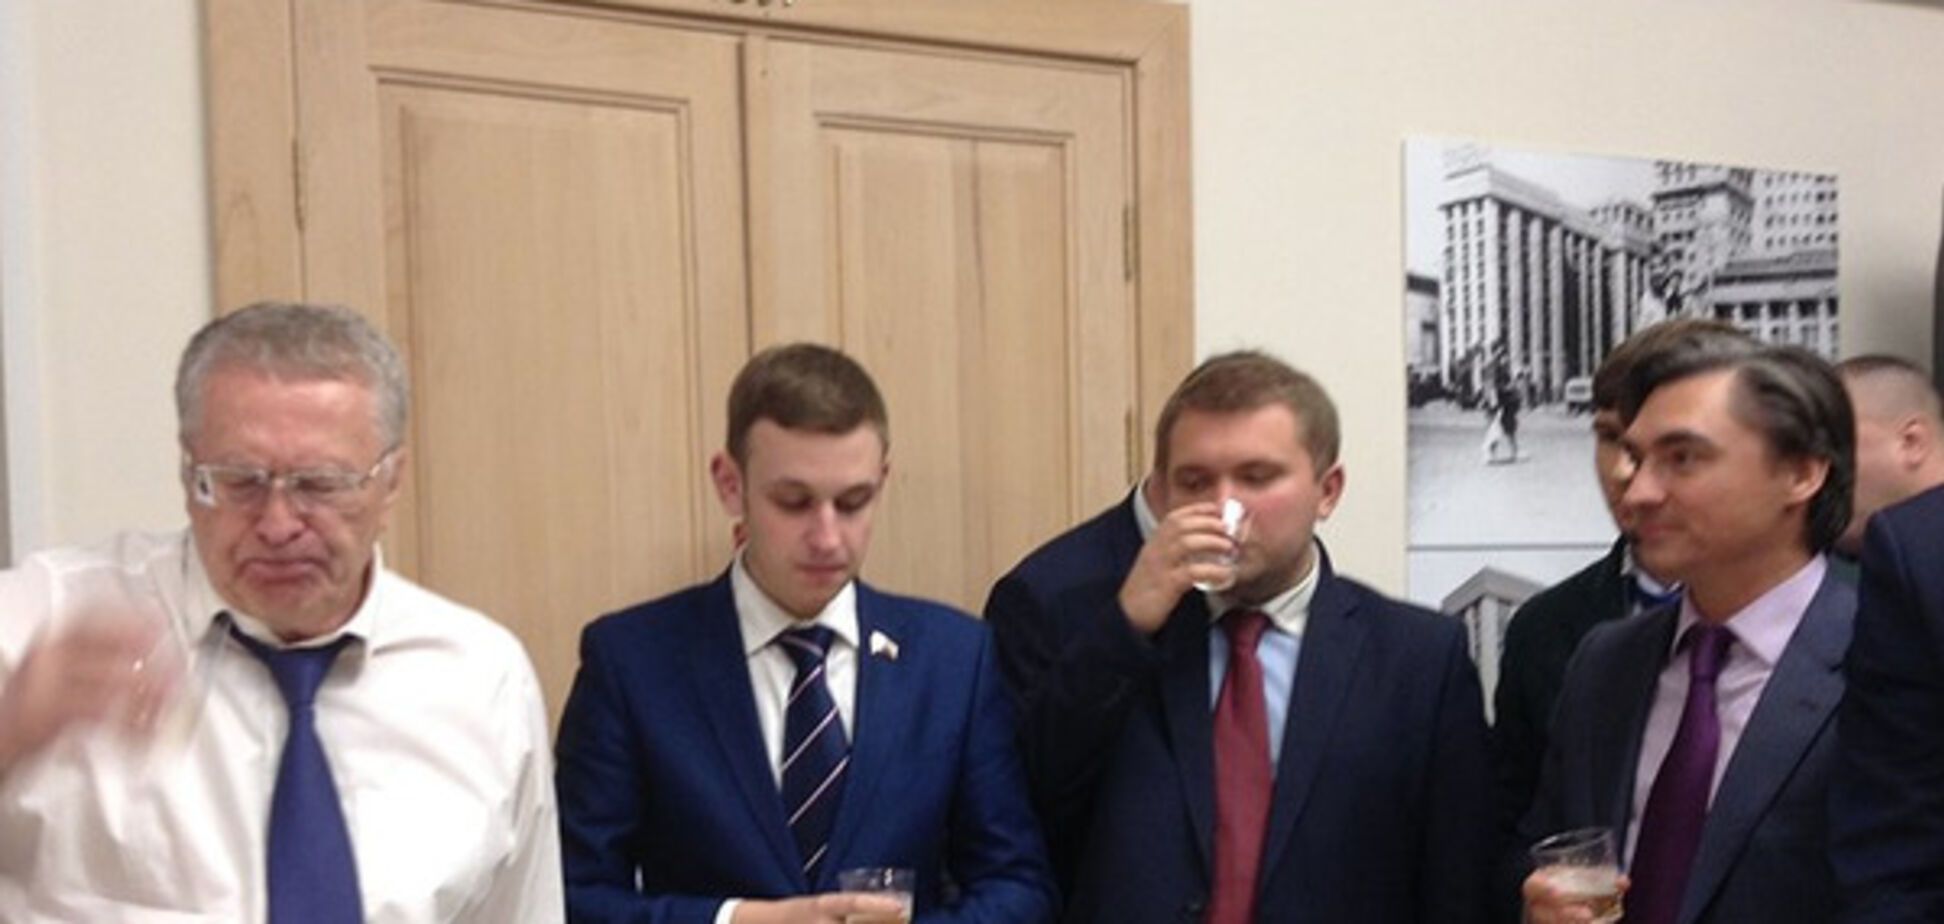 Жириновский устроил пьянку прямо в Госдуме по поводу победы Трампа: опубликовано фото